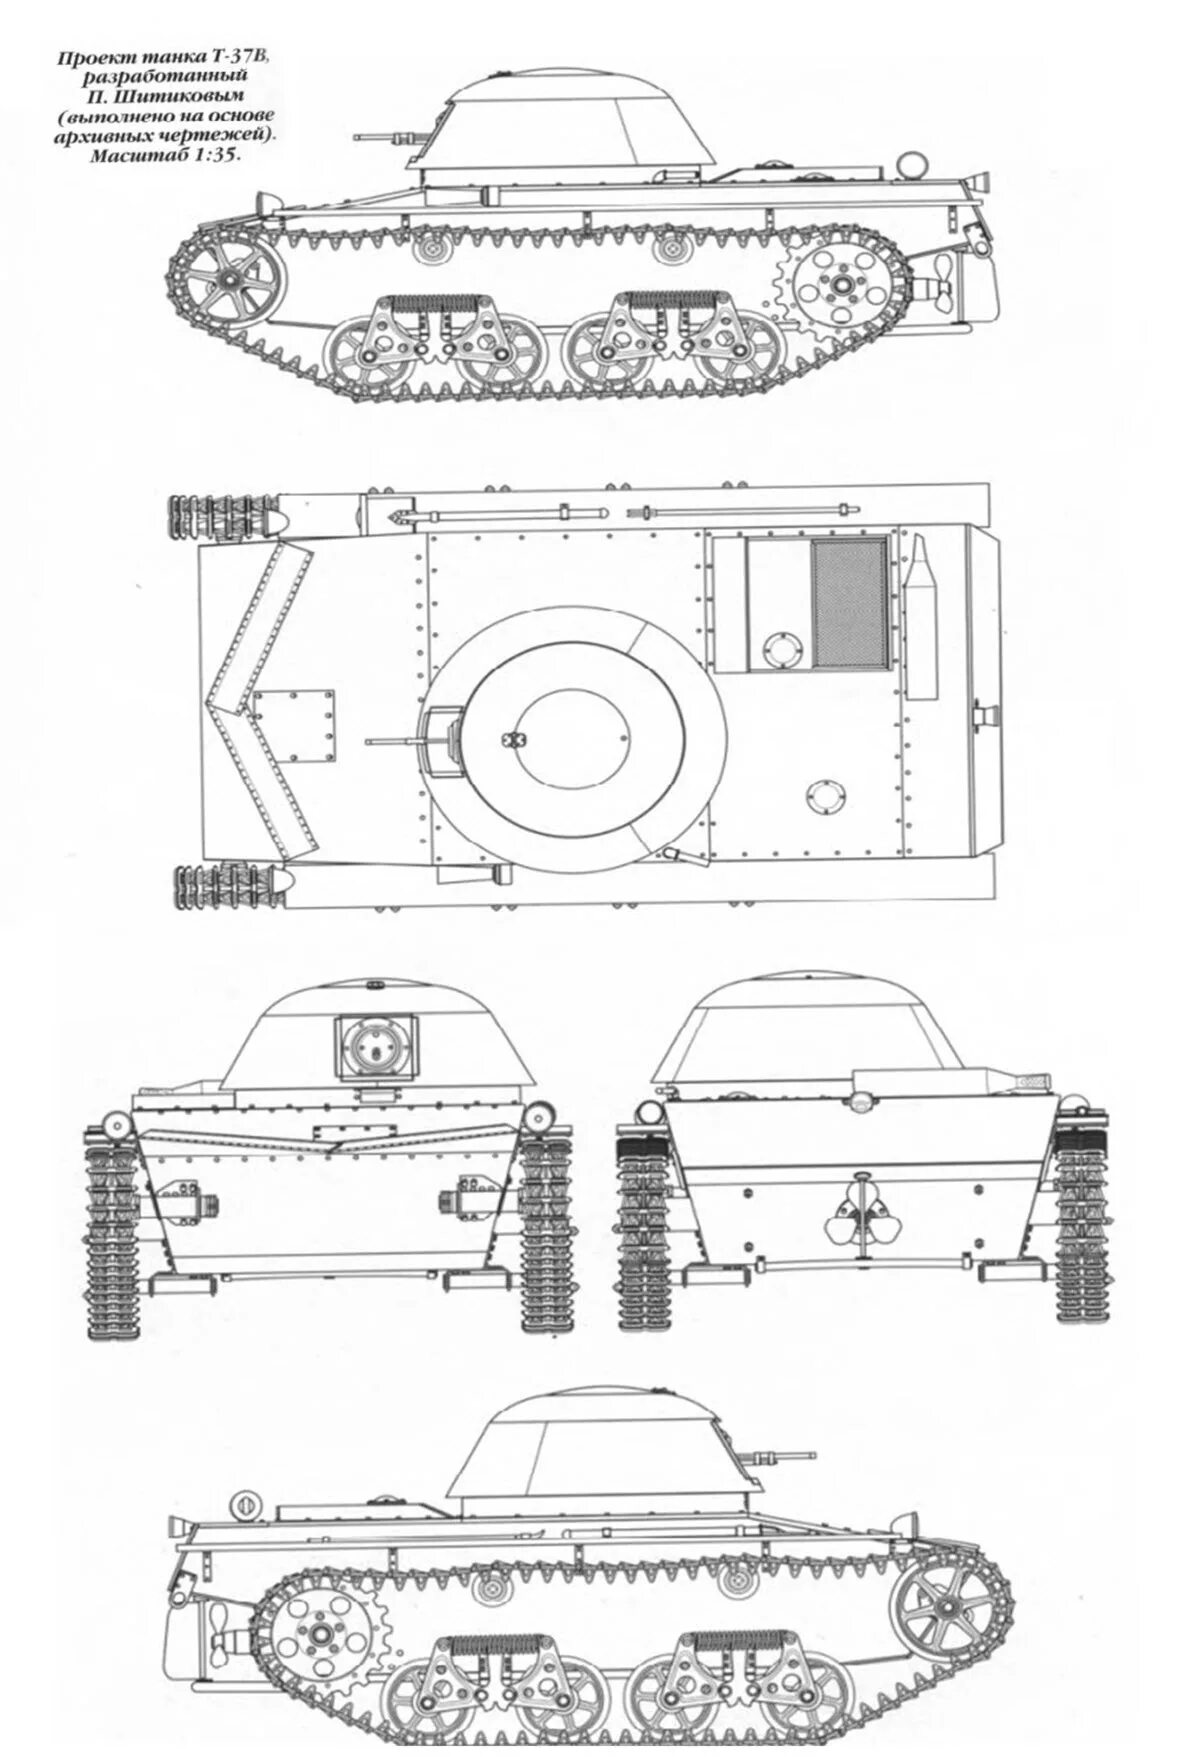 Б т 37 2. Танк Шитикова т-37б. Плавающий танк Шитикова. Т-37а плавающий танк. Т-37а лёгкий танк чертеж.